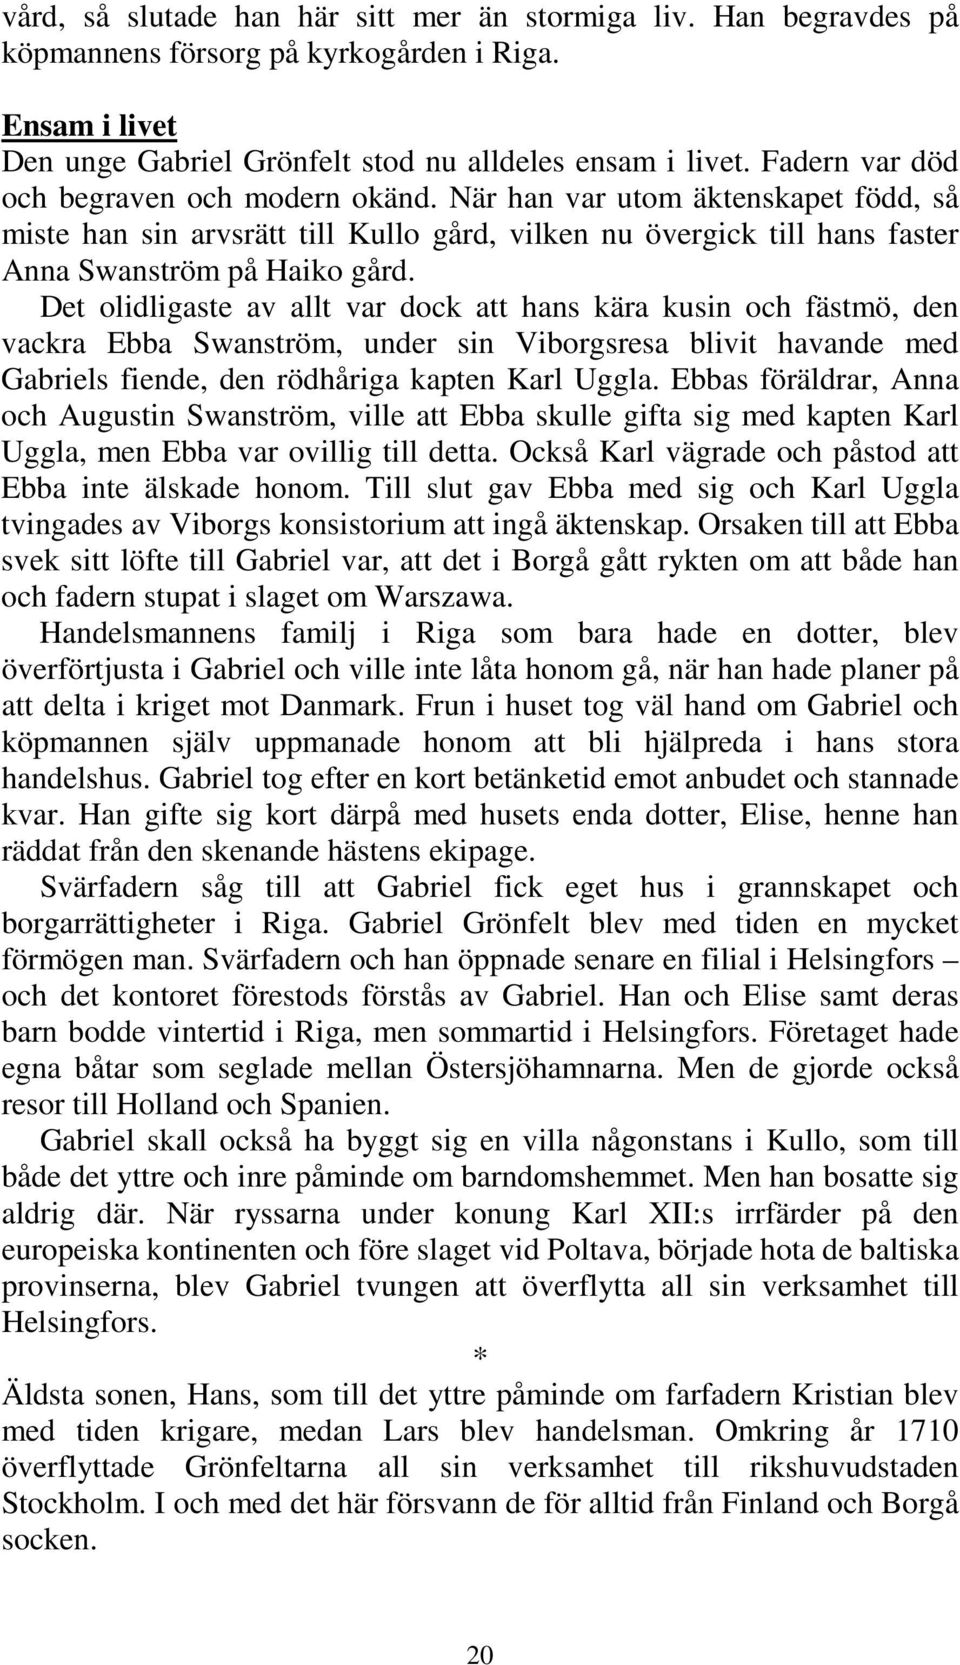 Det olidligaste av allt var dock att hans kära kusin och fästmö, den vackra Ebba Swanström, under sin Viborgsresa blivit havande med Gabriels fiende, den rödhåriga kapten Karl Uggla.